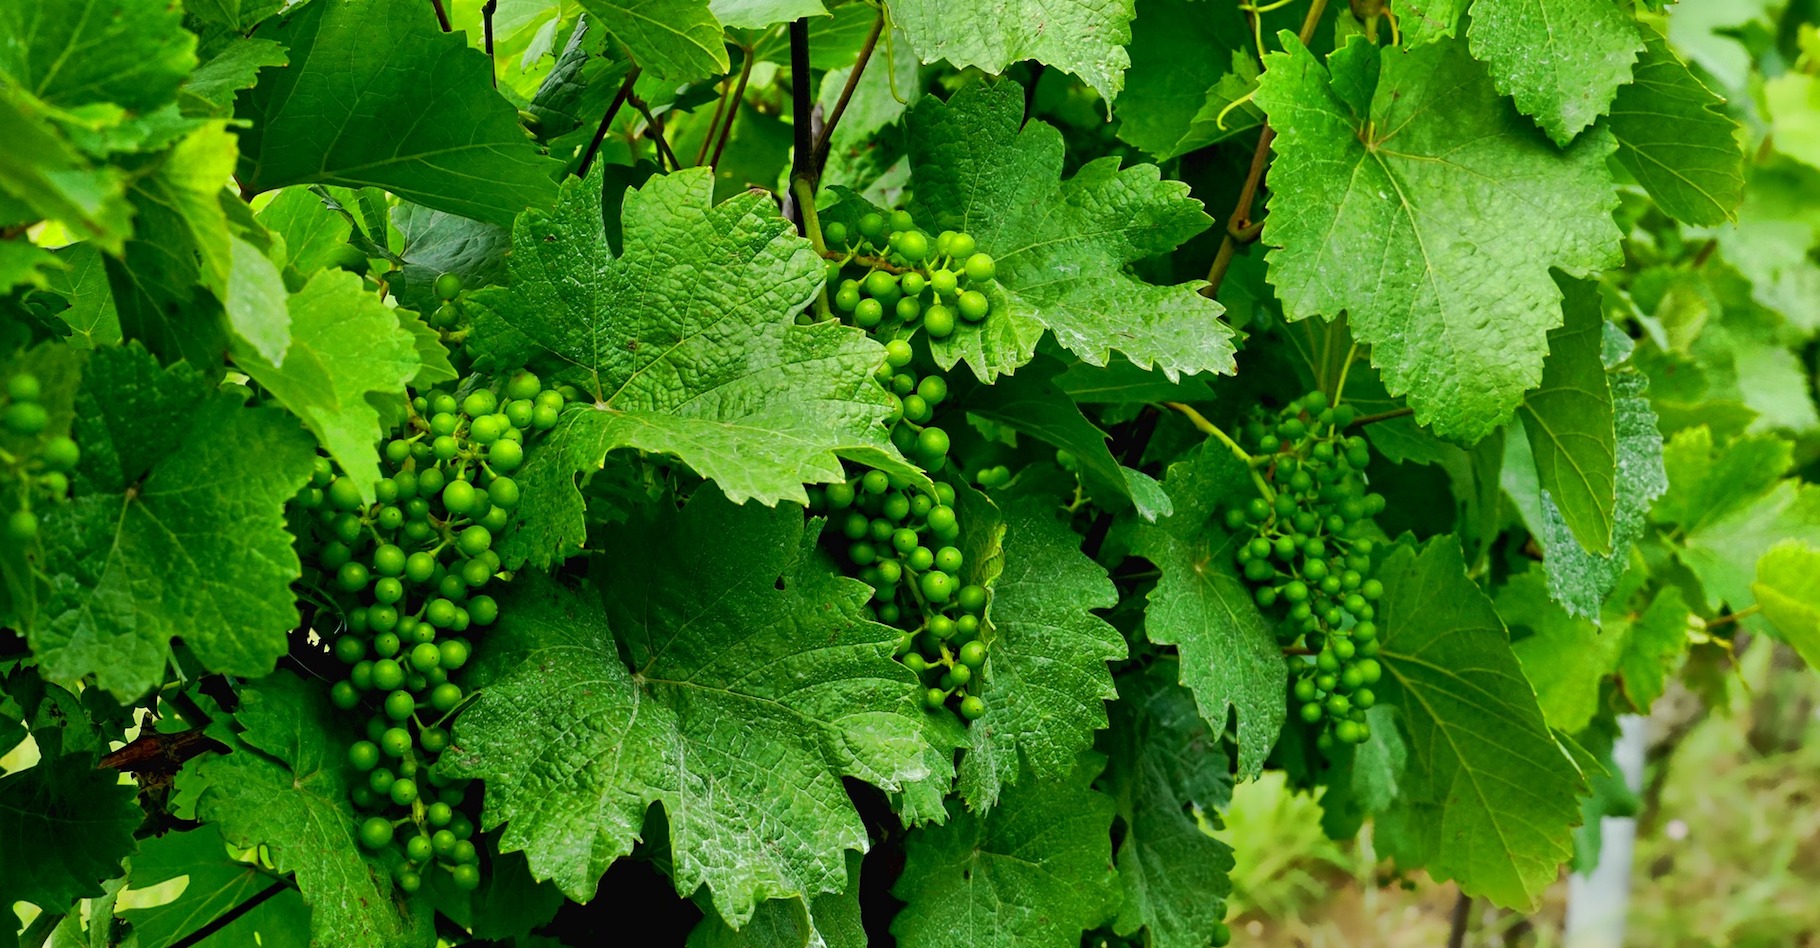 La bouillie bordelaise est un traitement fongicide mis au point pour traiter le mildiou de la vigne. © Schwoaze, Pixabay, CC0 Creative Commons